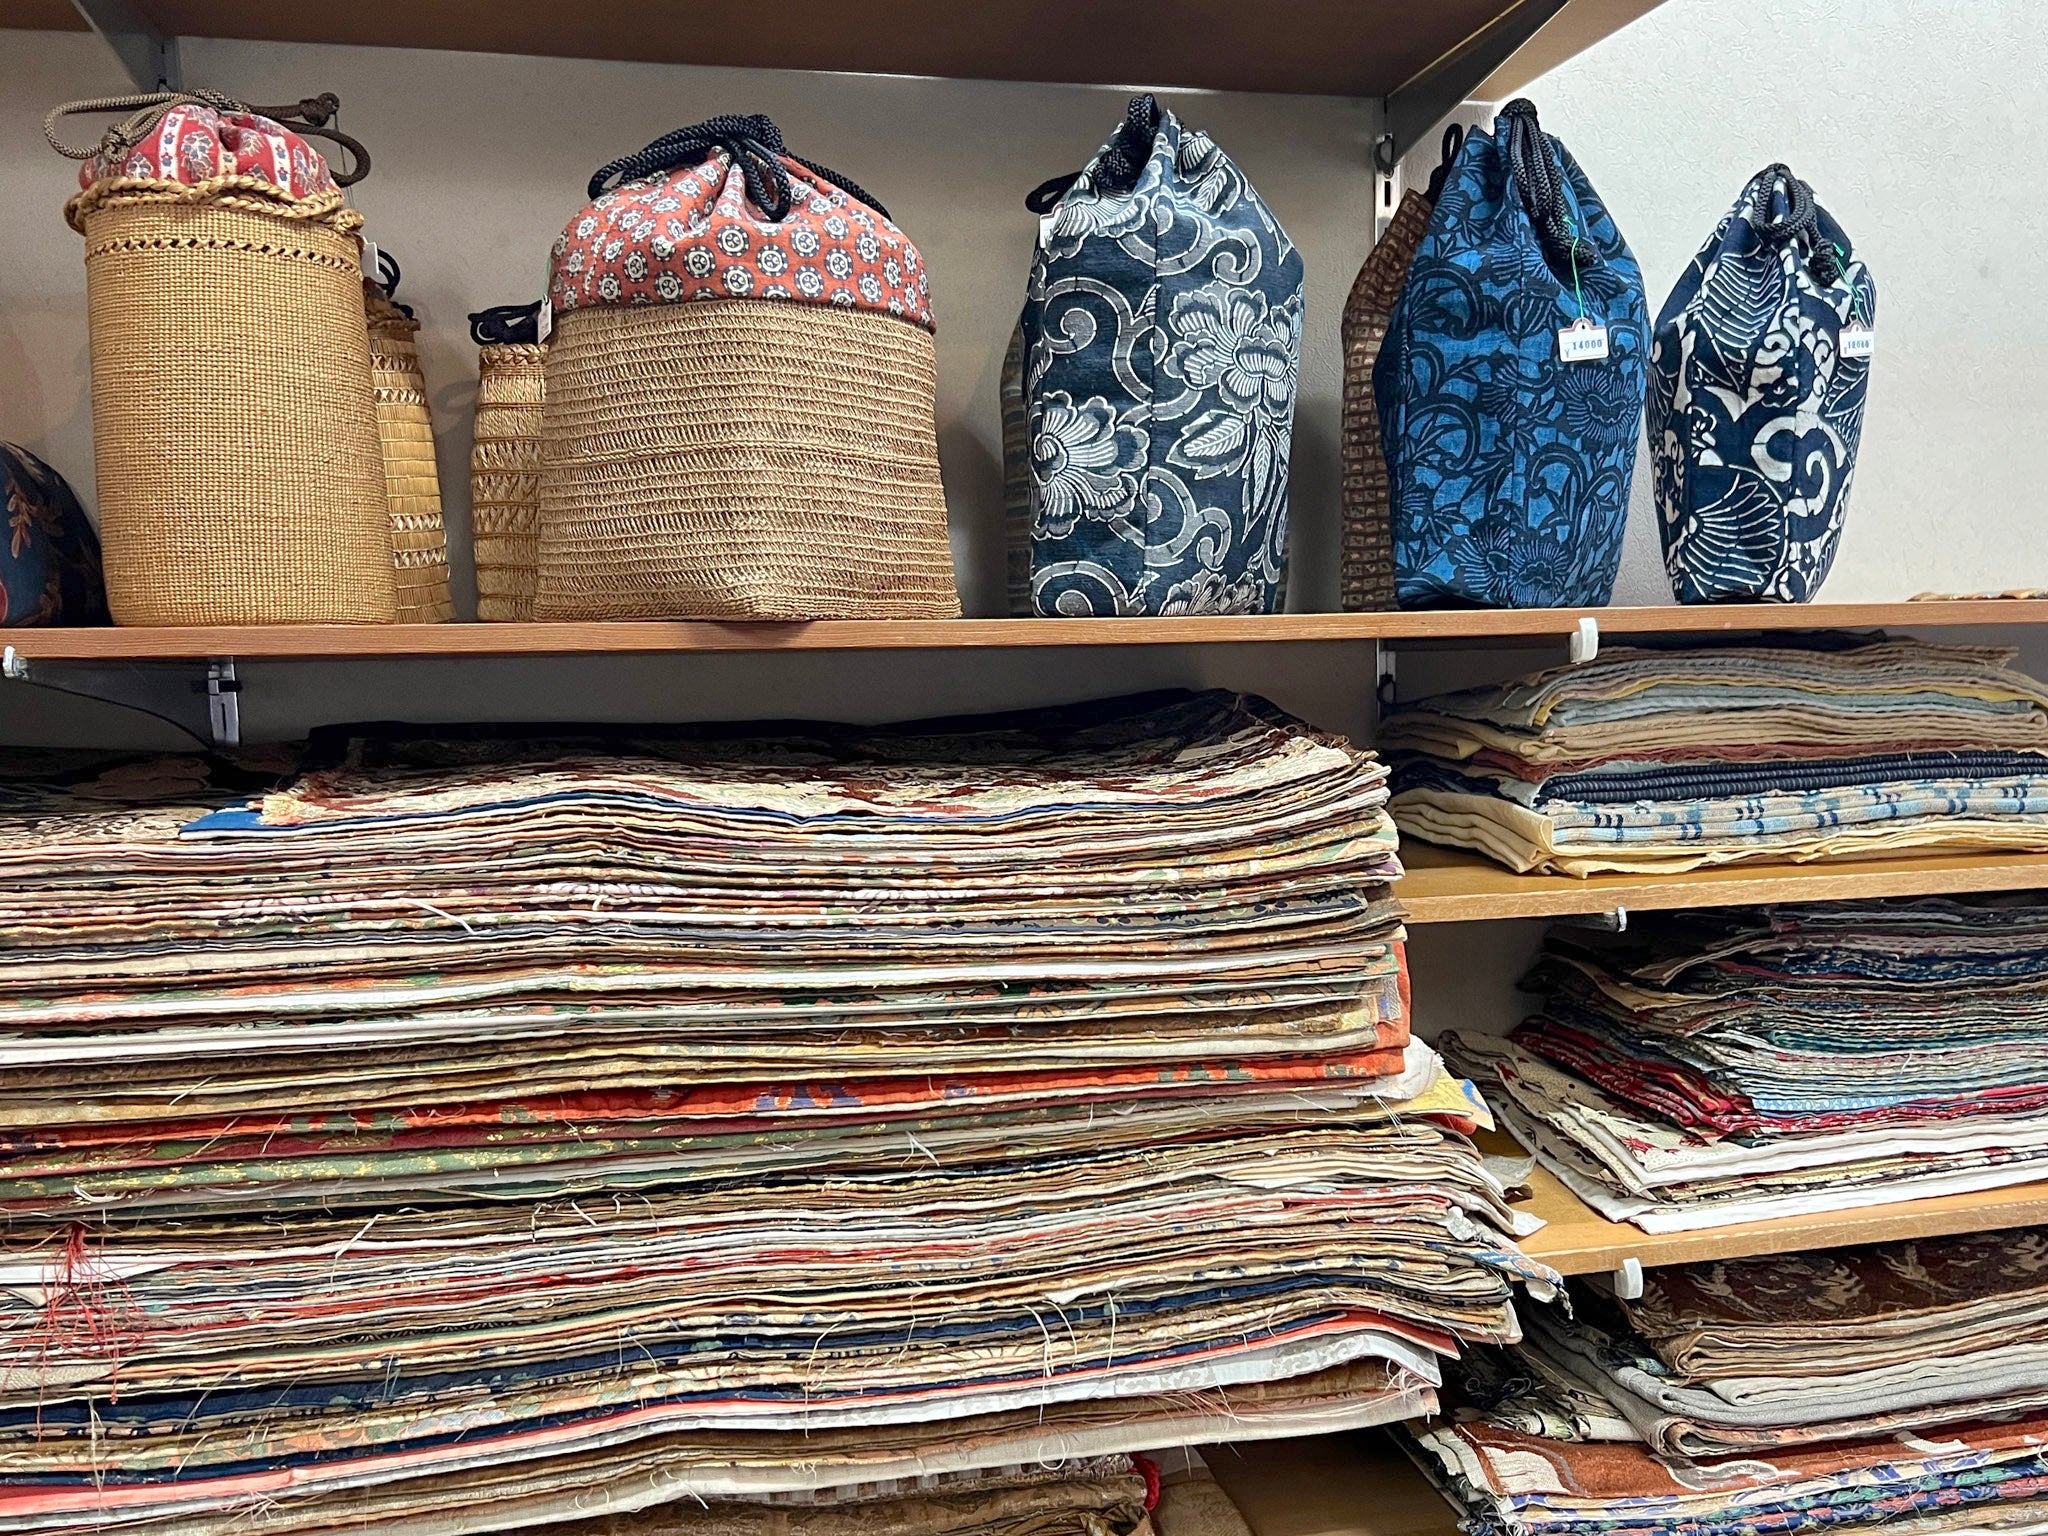 Nakamura Chingireten, Old Textile Art, in Kyoto